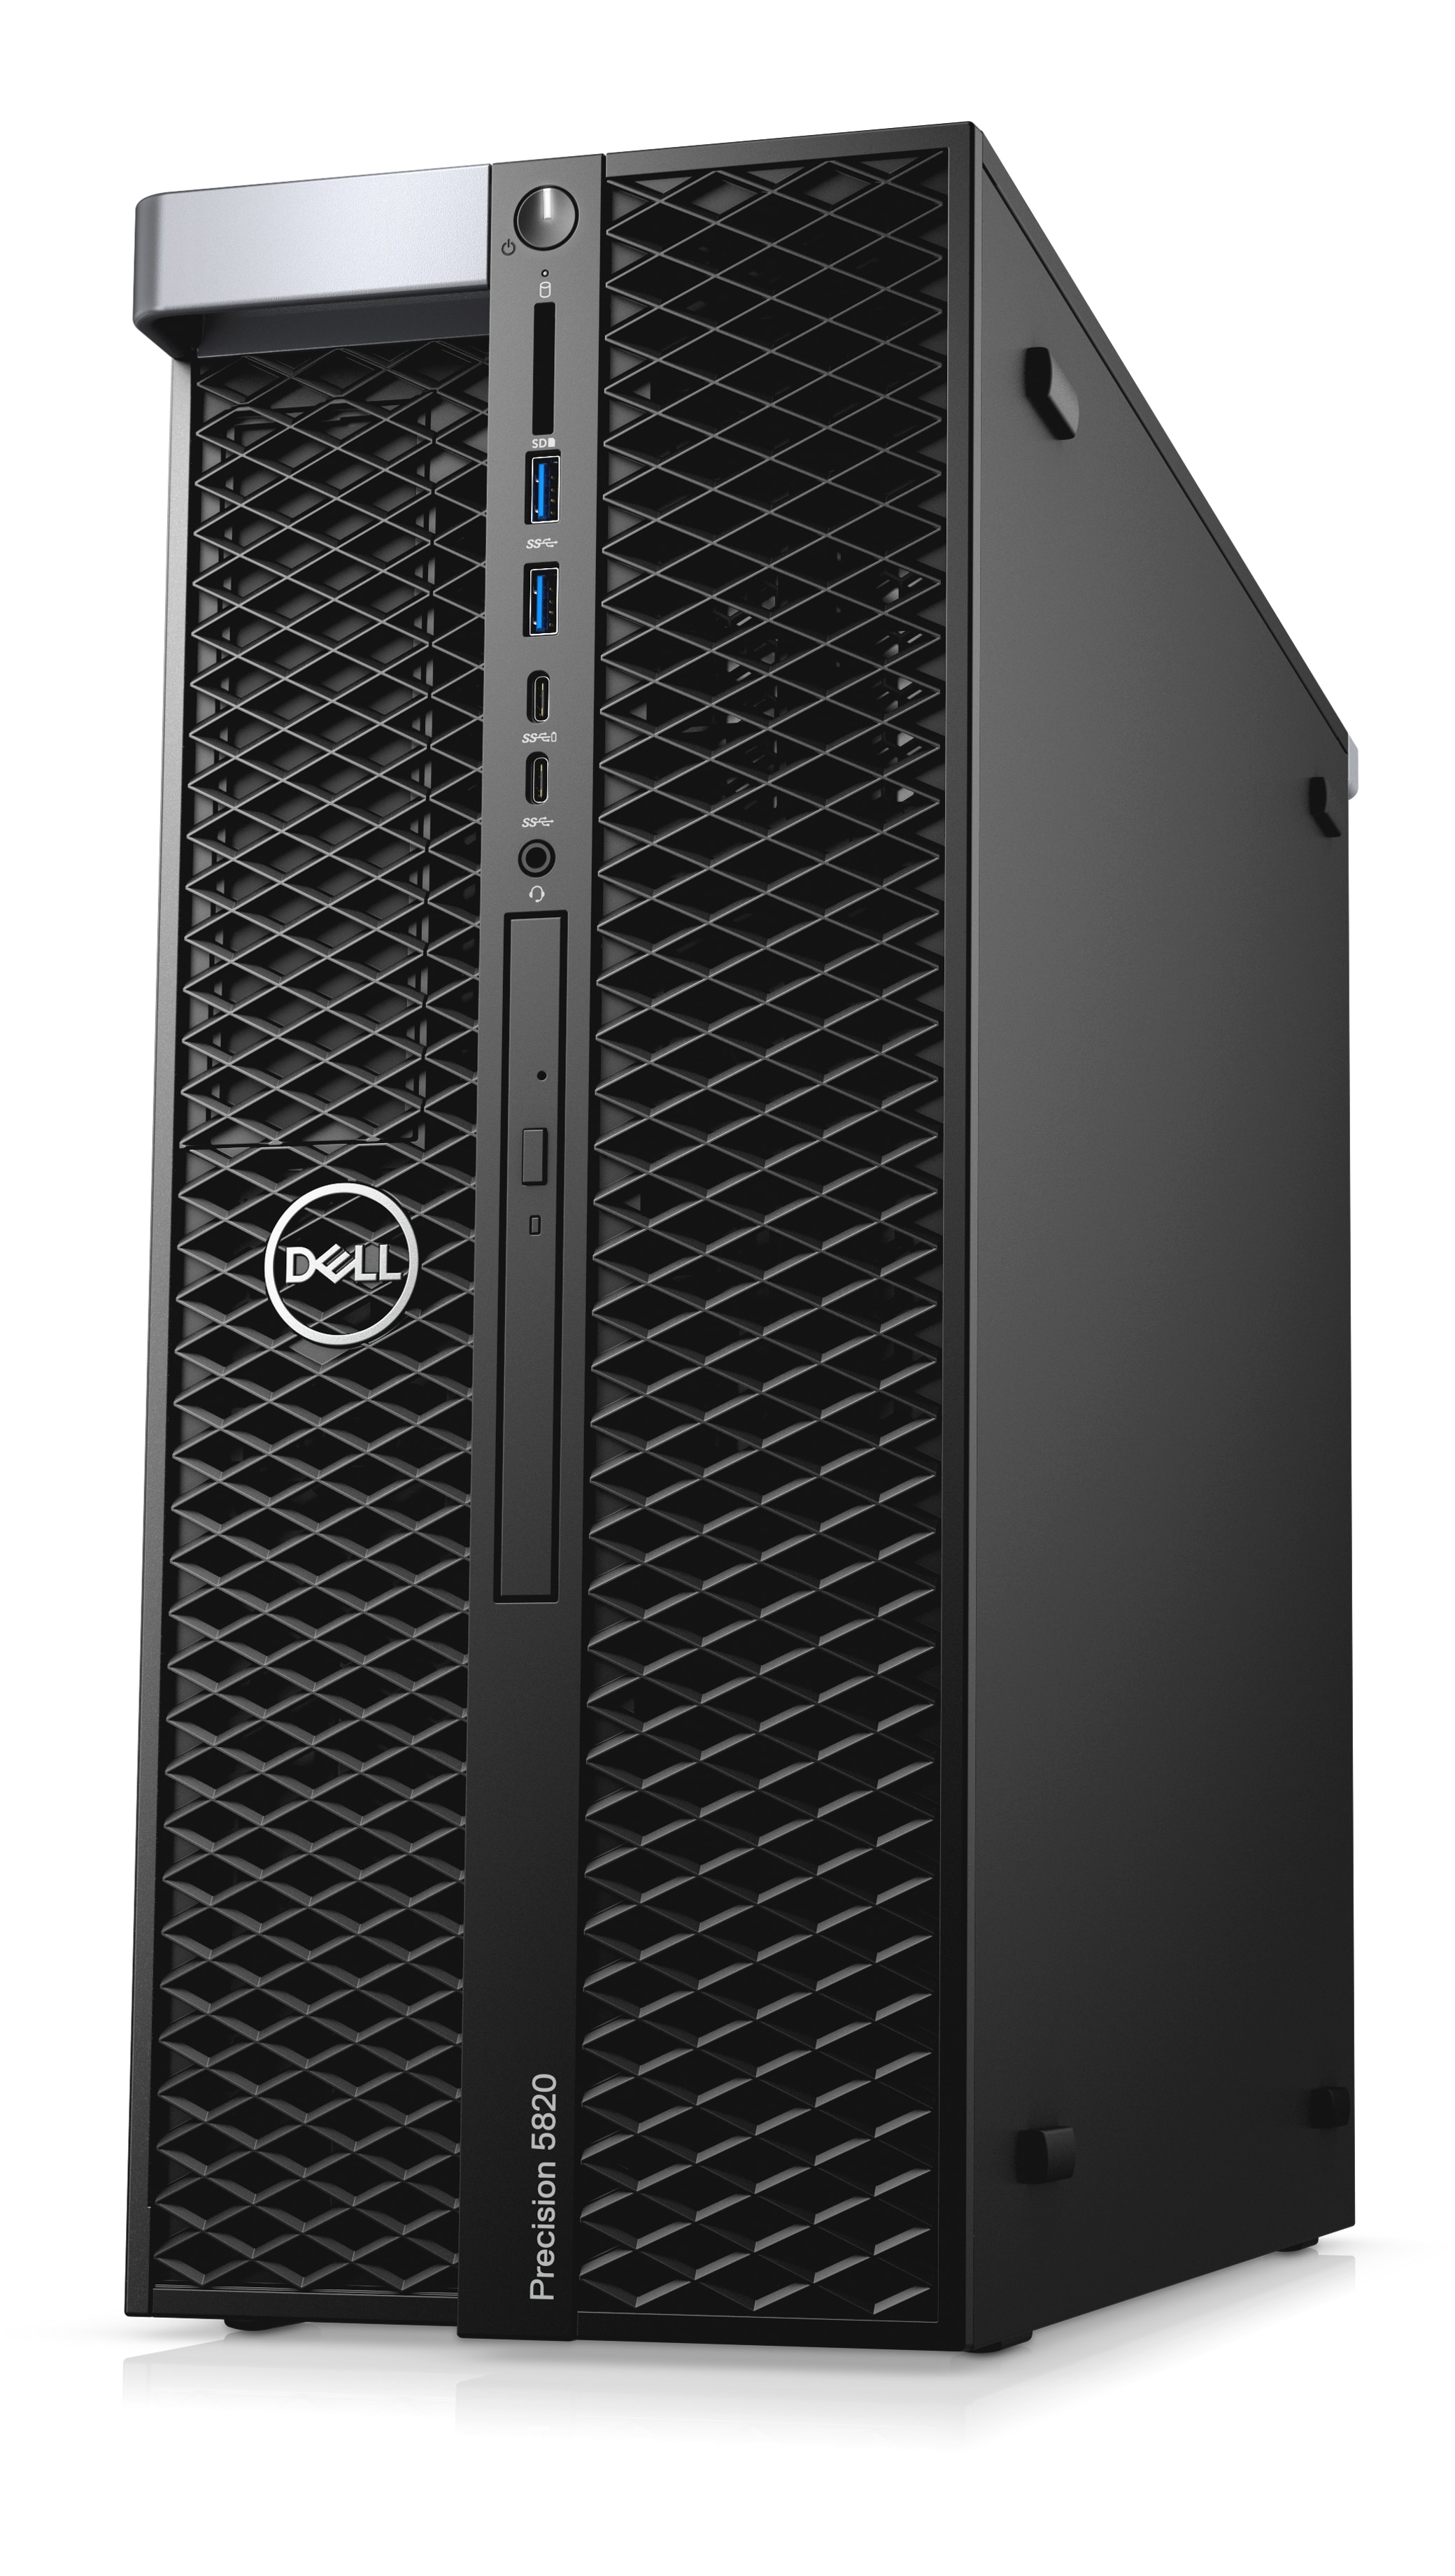 Dell Precision t5400 Xeon Quad Core e5430 @ 4x 2,66ghz 4gb 500gb quadro fx570 